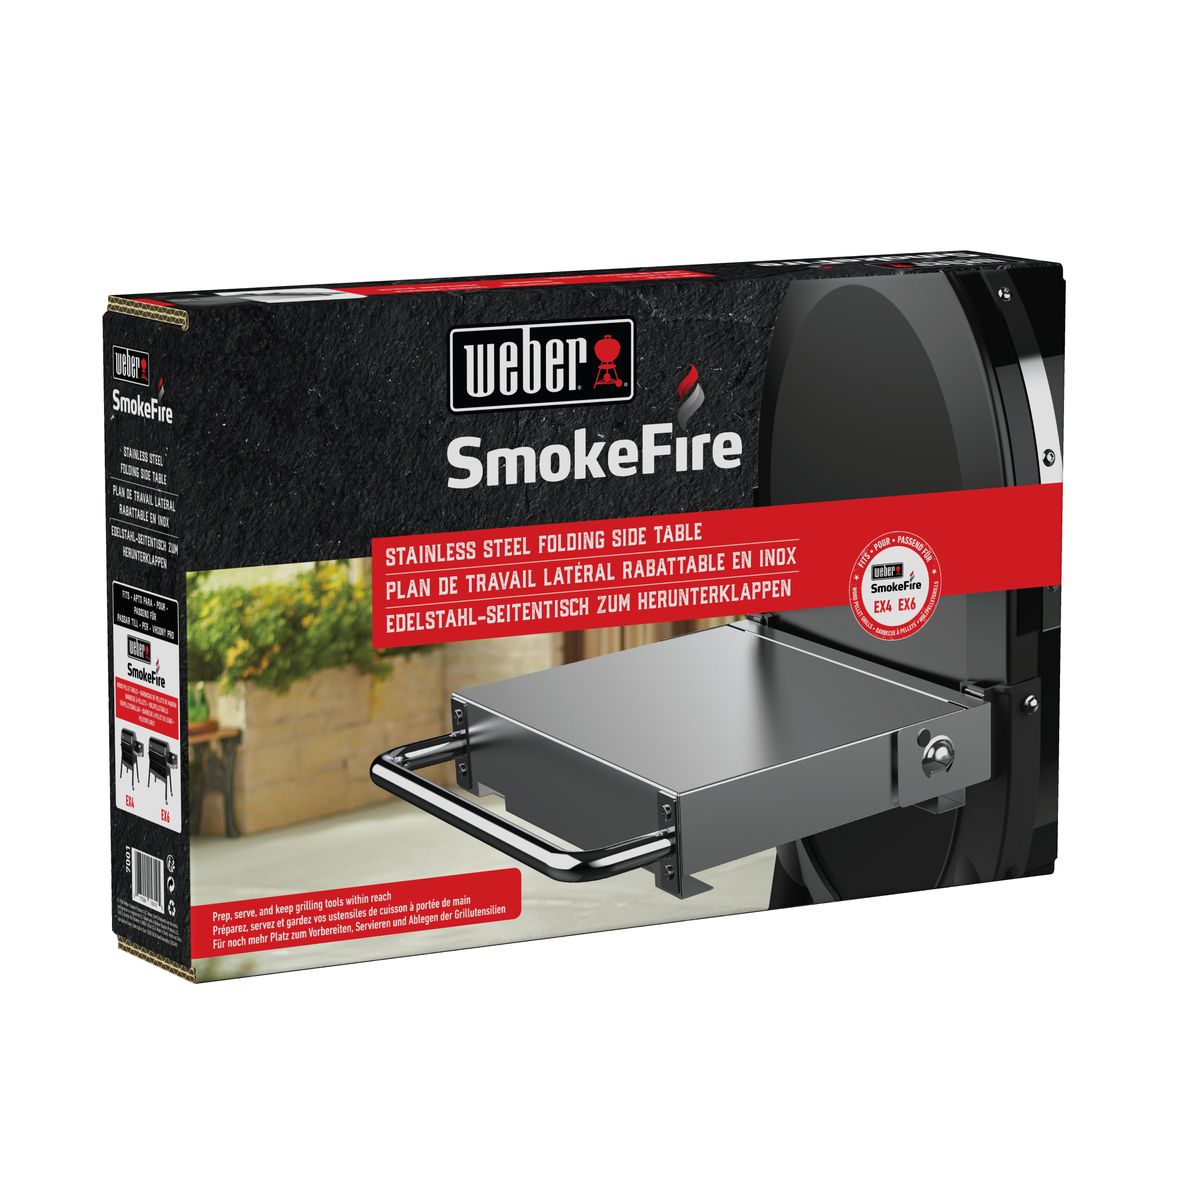 Складений боковий столик з нержавіючої сталі для пелетних грилів Weber SmokeFire